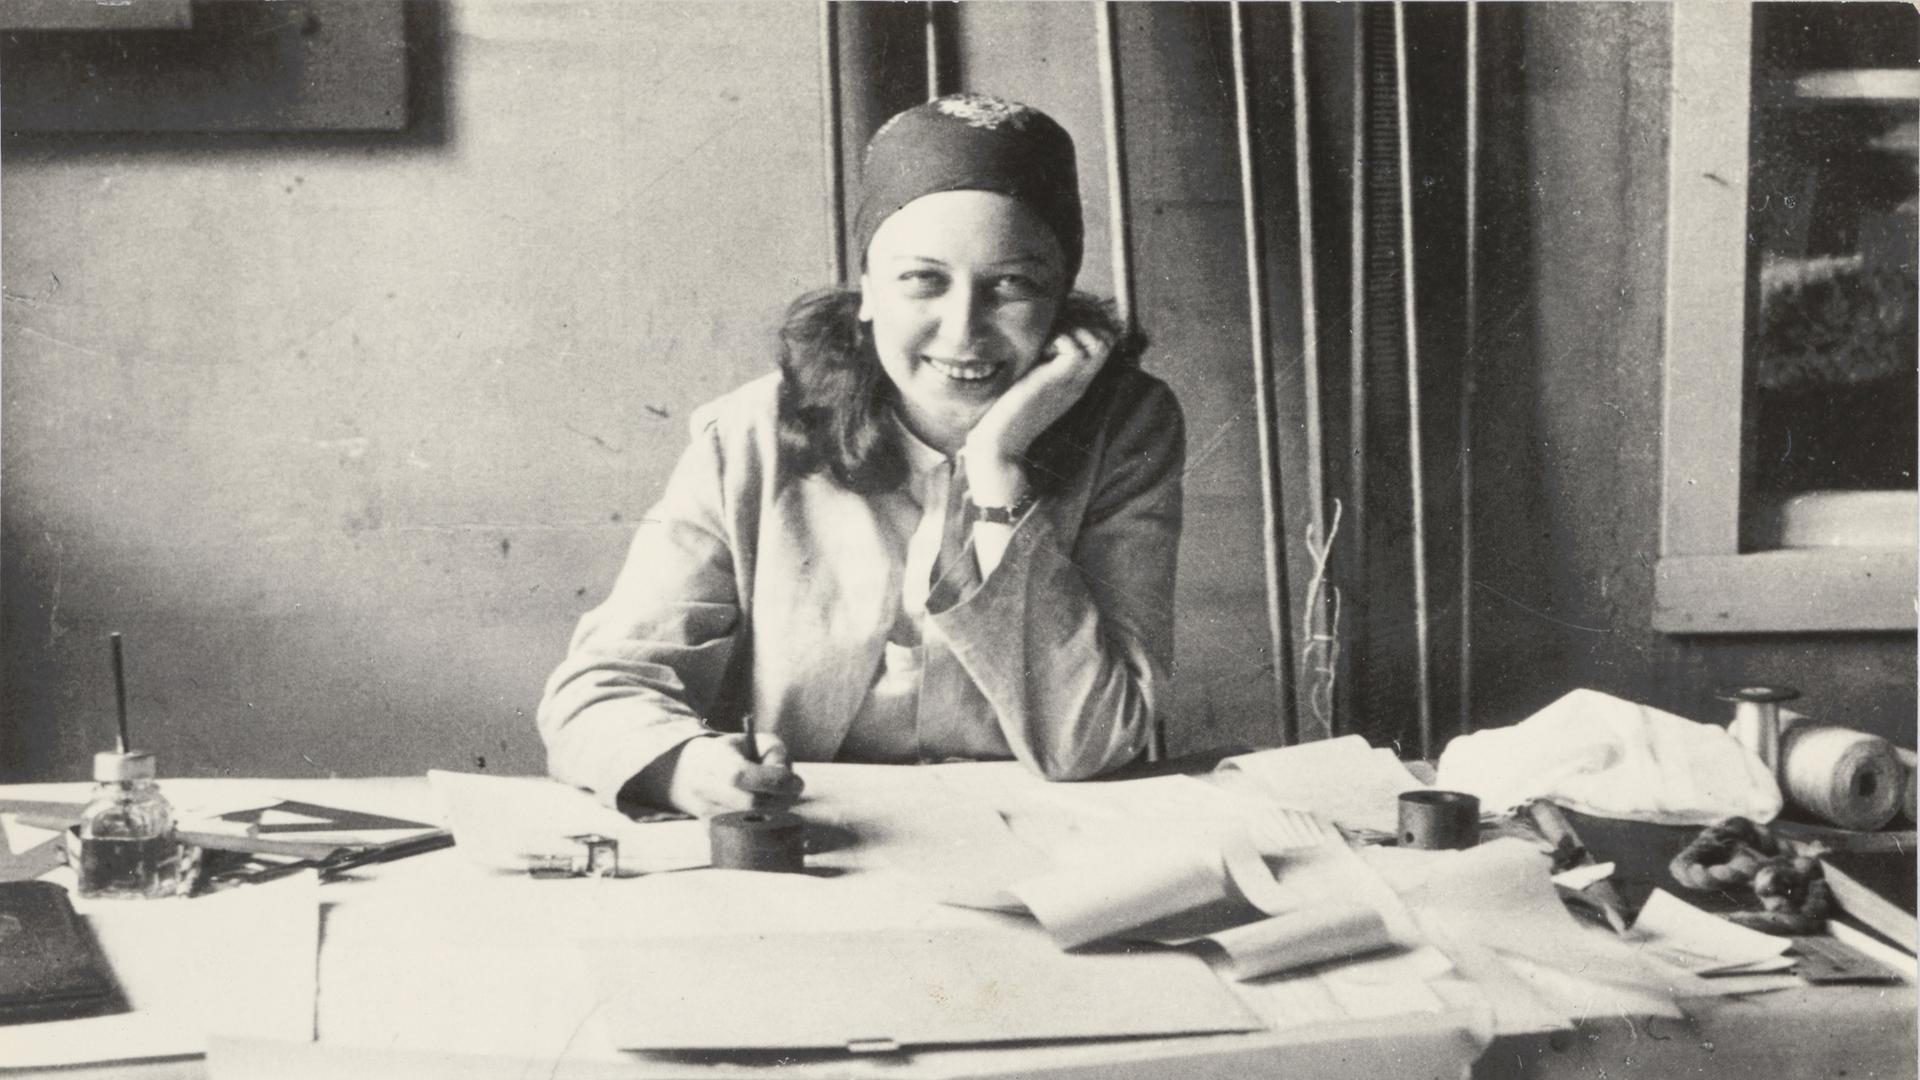 Historisches Schwarzweißfoto von Otti Berger, die lachend an ihrem Arbeitstisch sitzt. Sie trägt einen Blazer und ein gemustertes Tuch um den Kopf gebunden.